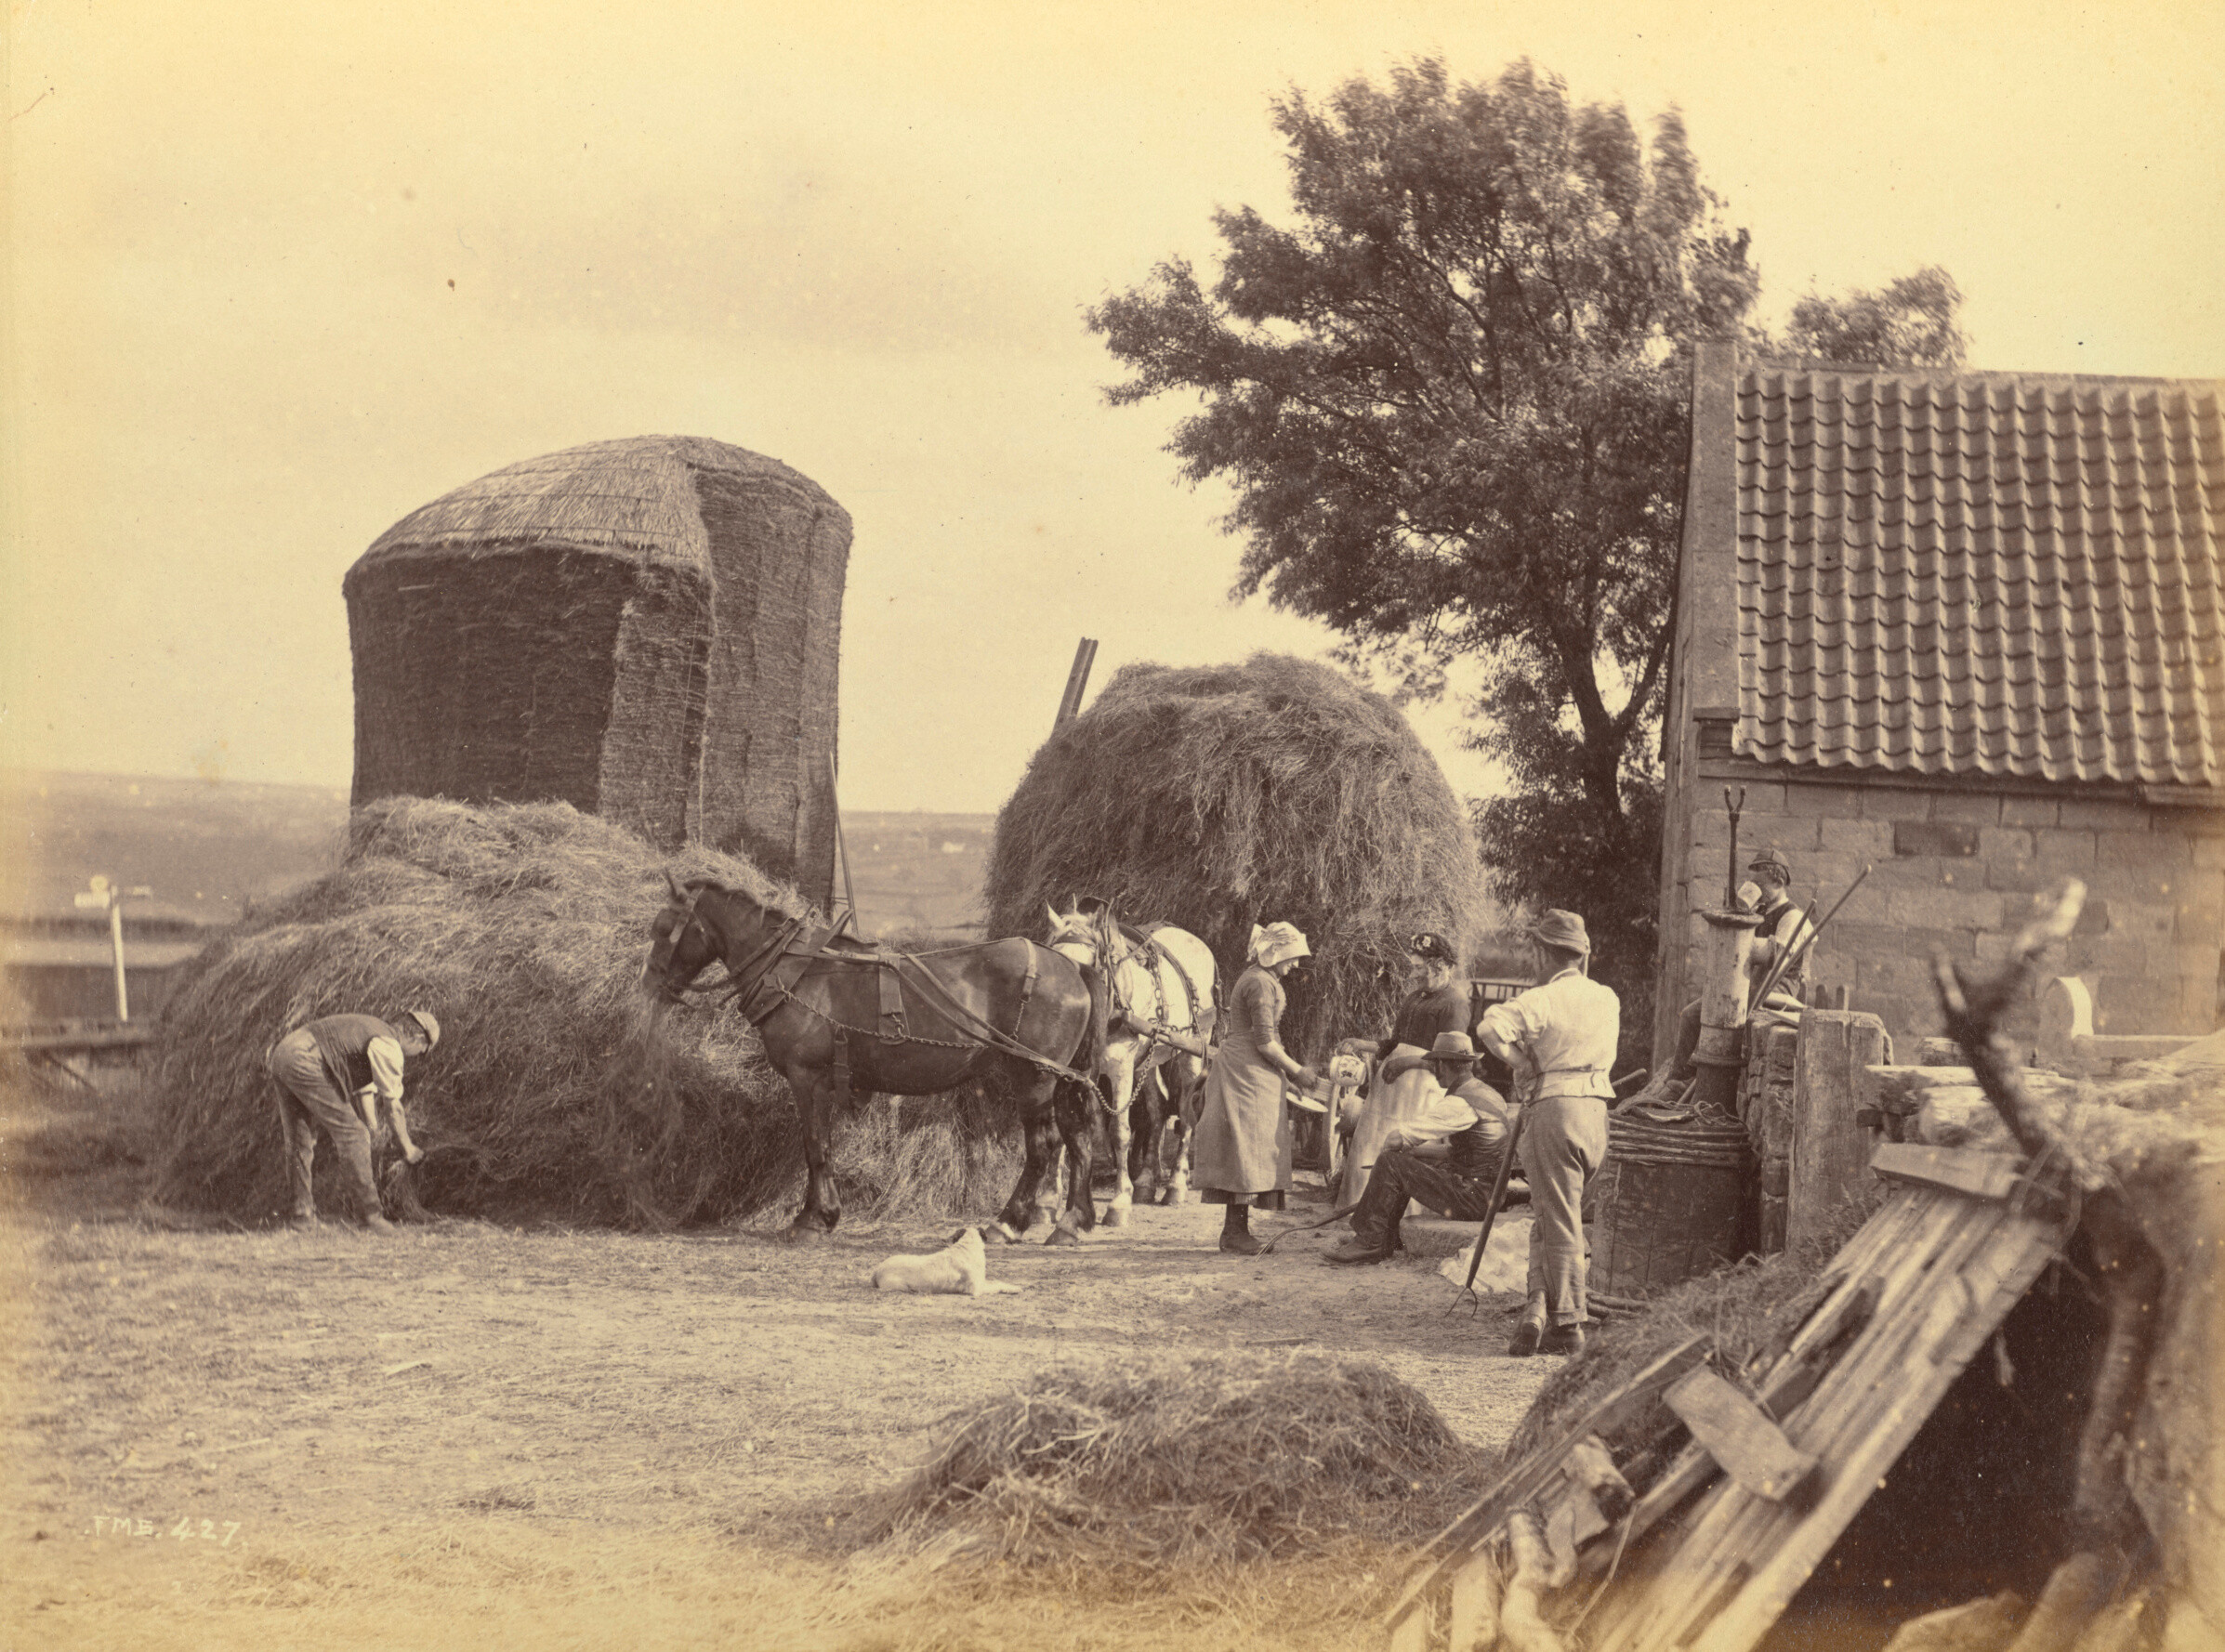 Уитби, 1880. Фотограф Фрэнк Мидоу Сатклифф